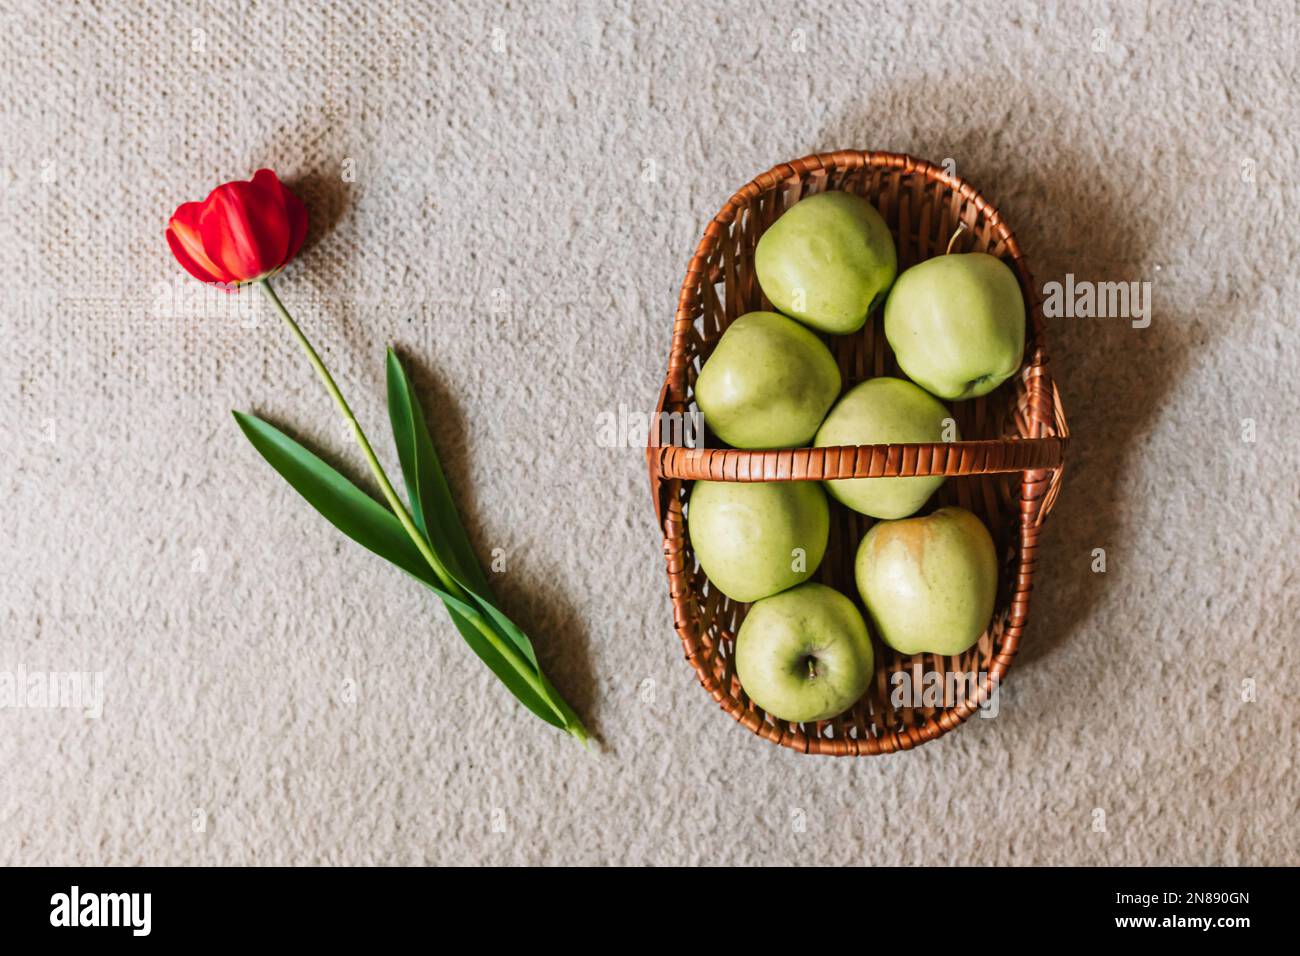 Frische, grüne Äpfel im Korb und eine rote Tulpe. Draufsicht, Frühjahrssymbolik. Stockfoto